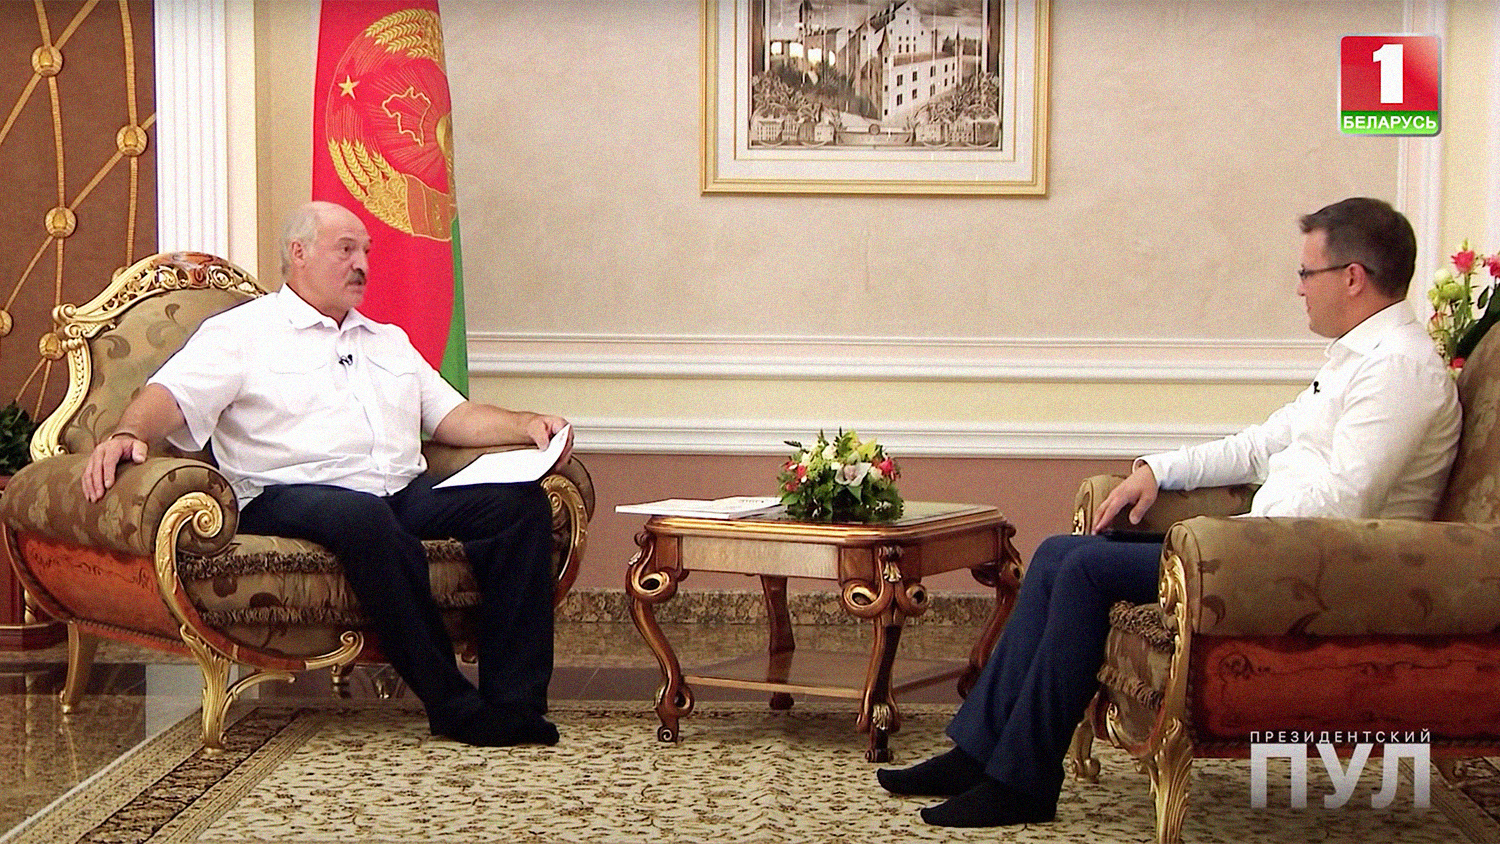 Επικός ο Πρόεδρος της Λευκορωσίας: Πήγε σε συνέντευξη Τύπου… με τις κάλτσες (βίντεο)